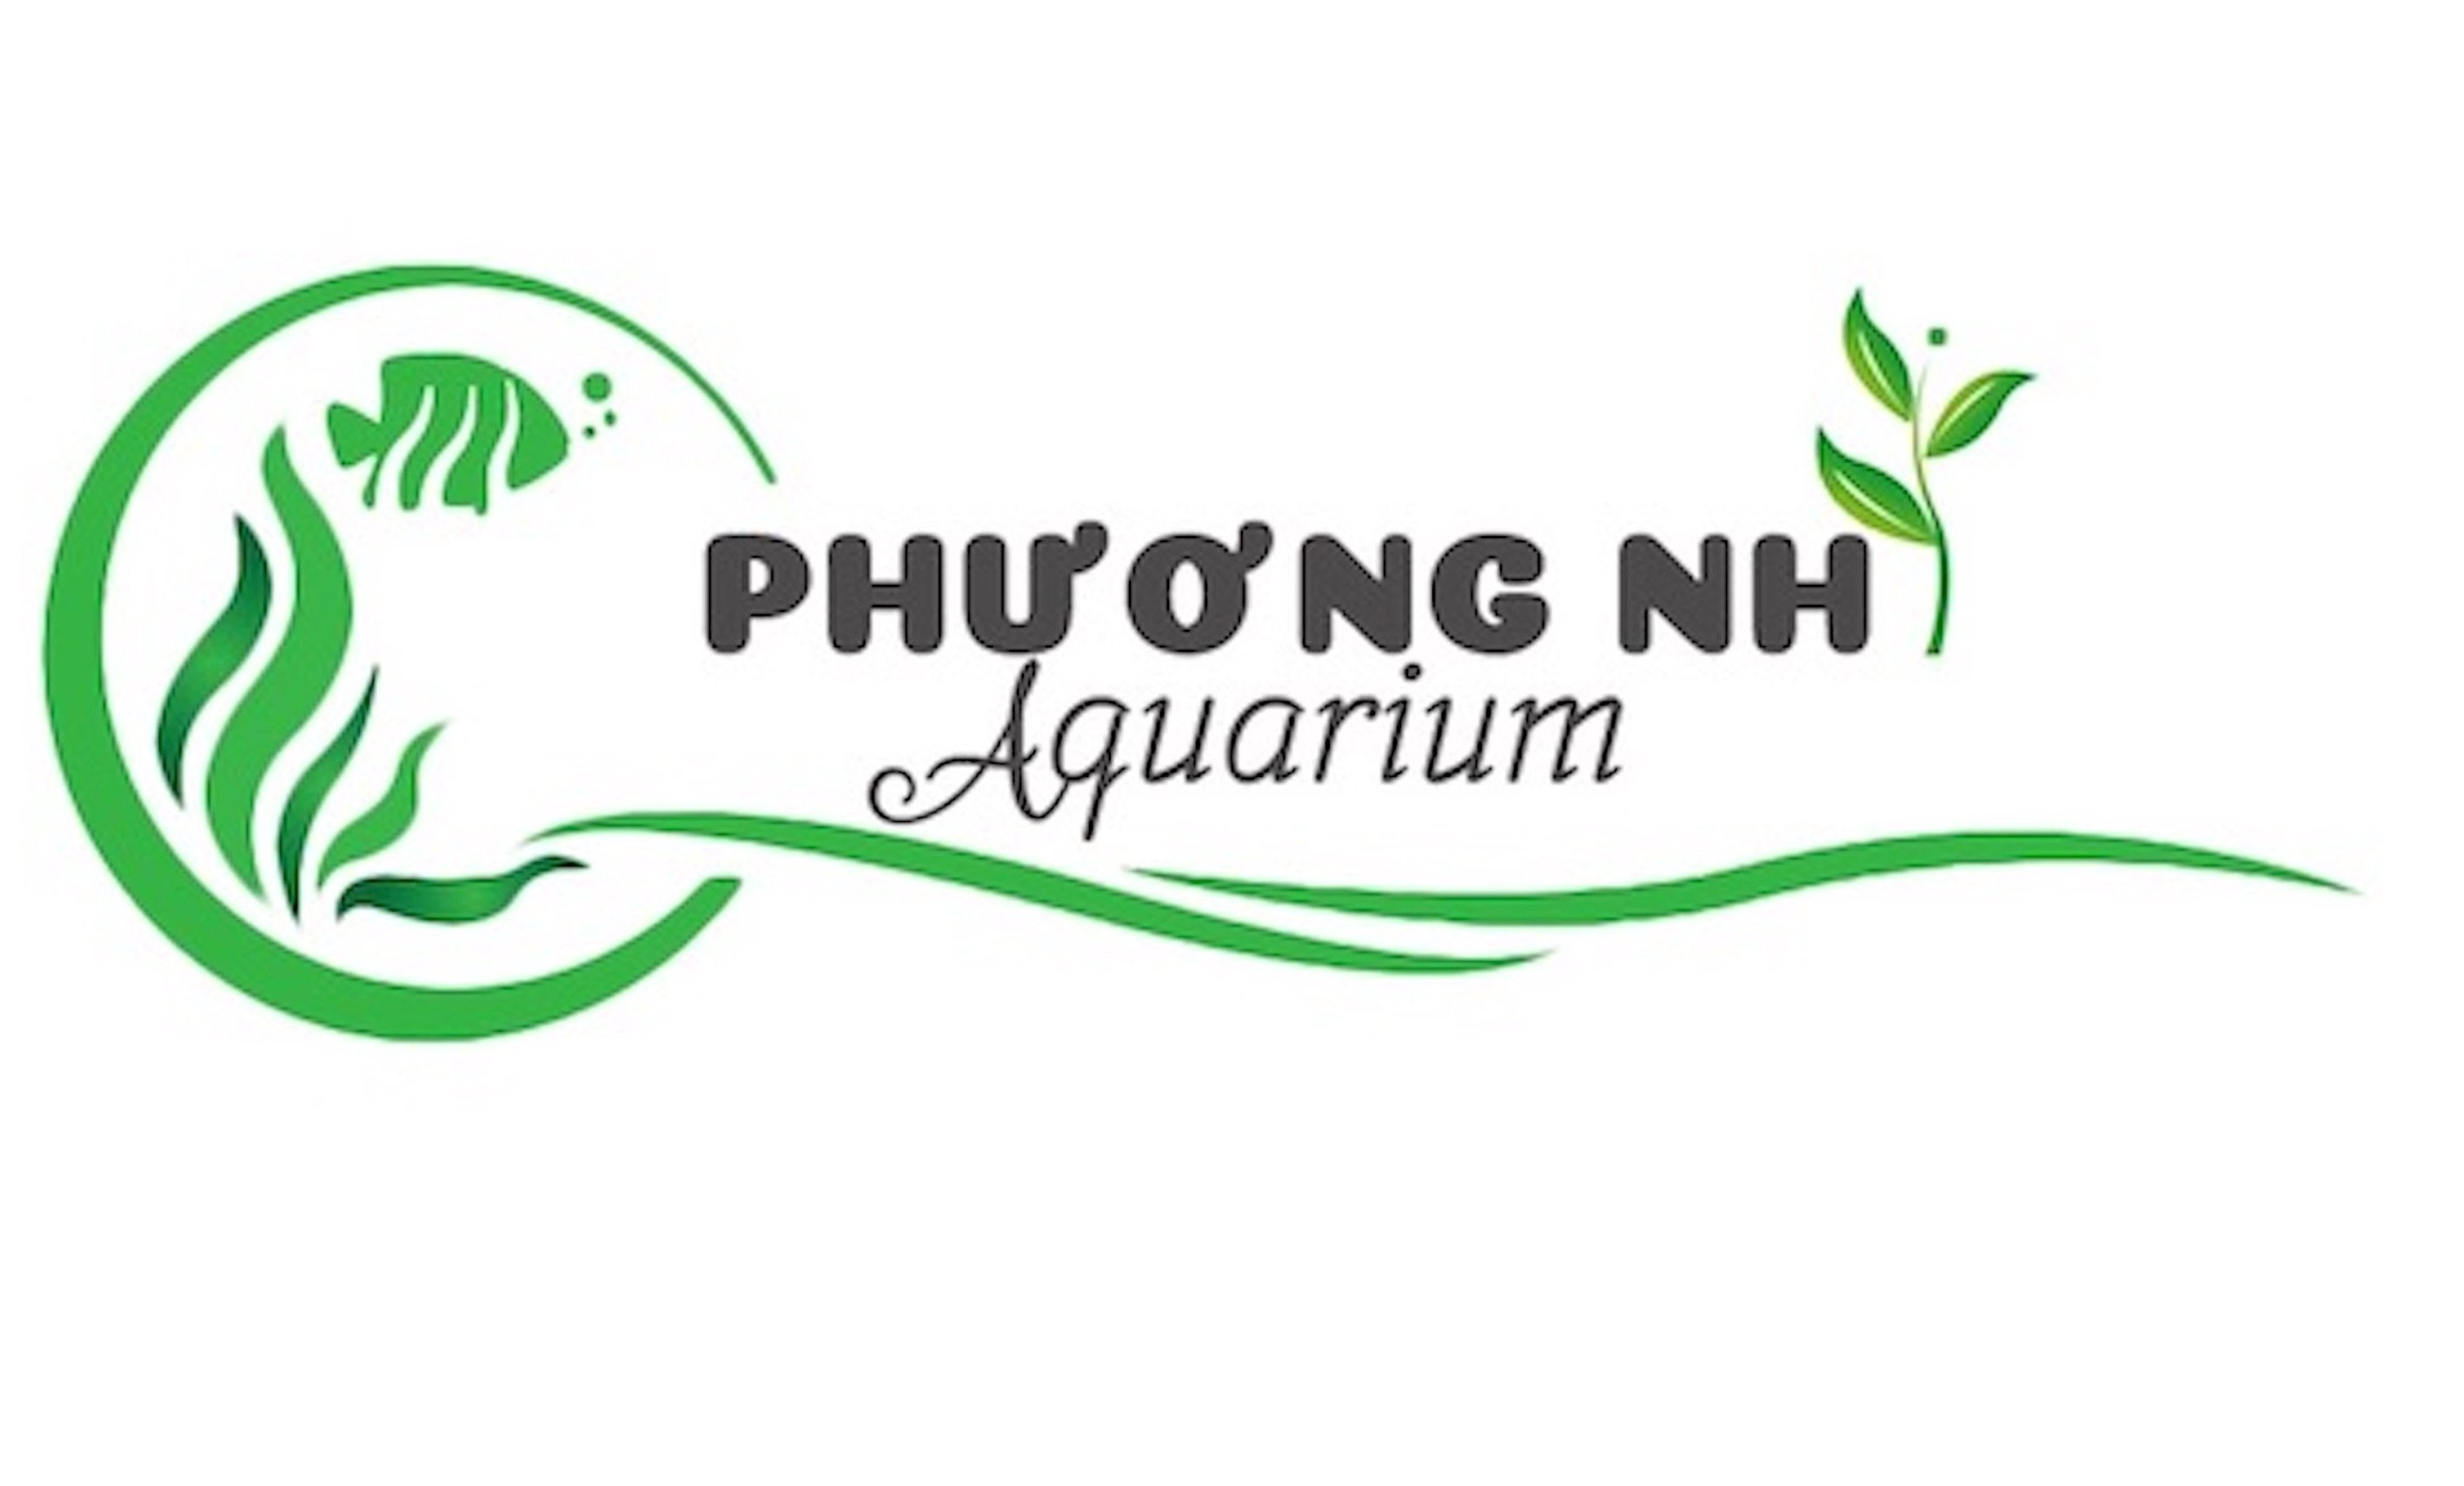 Cây thuỷ sinh Lệ nhi-phương nhi aquarium